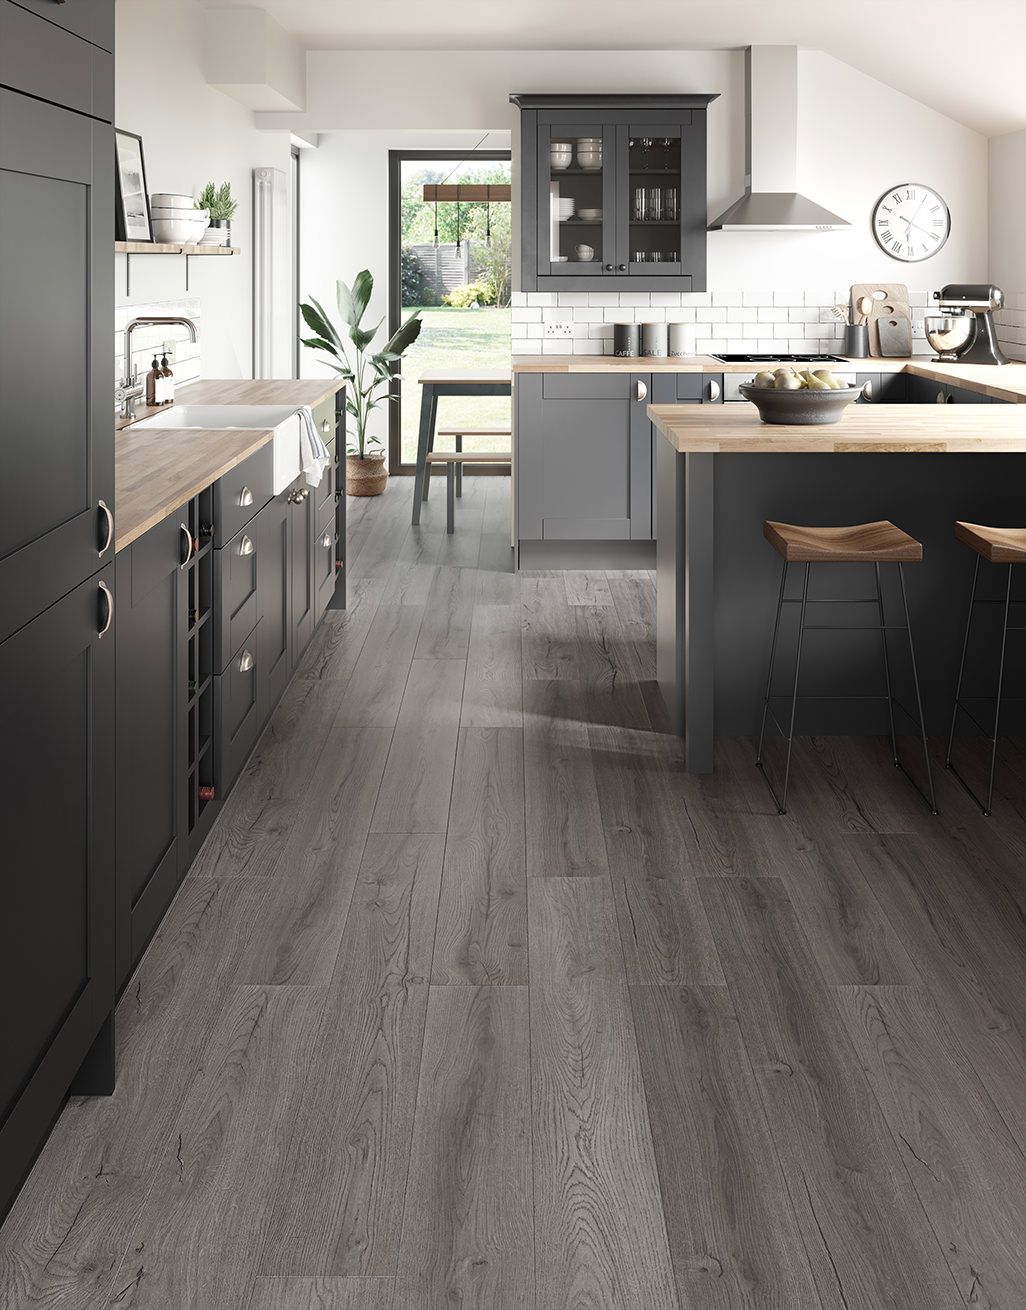 Loft Dark Grey Laminate Flooring, Kitchen With Grey Laminate Flooring